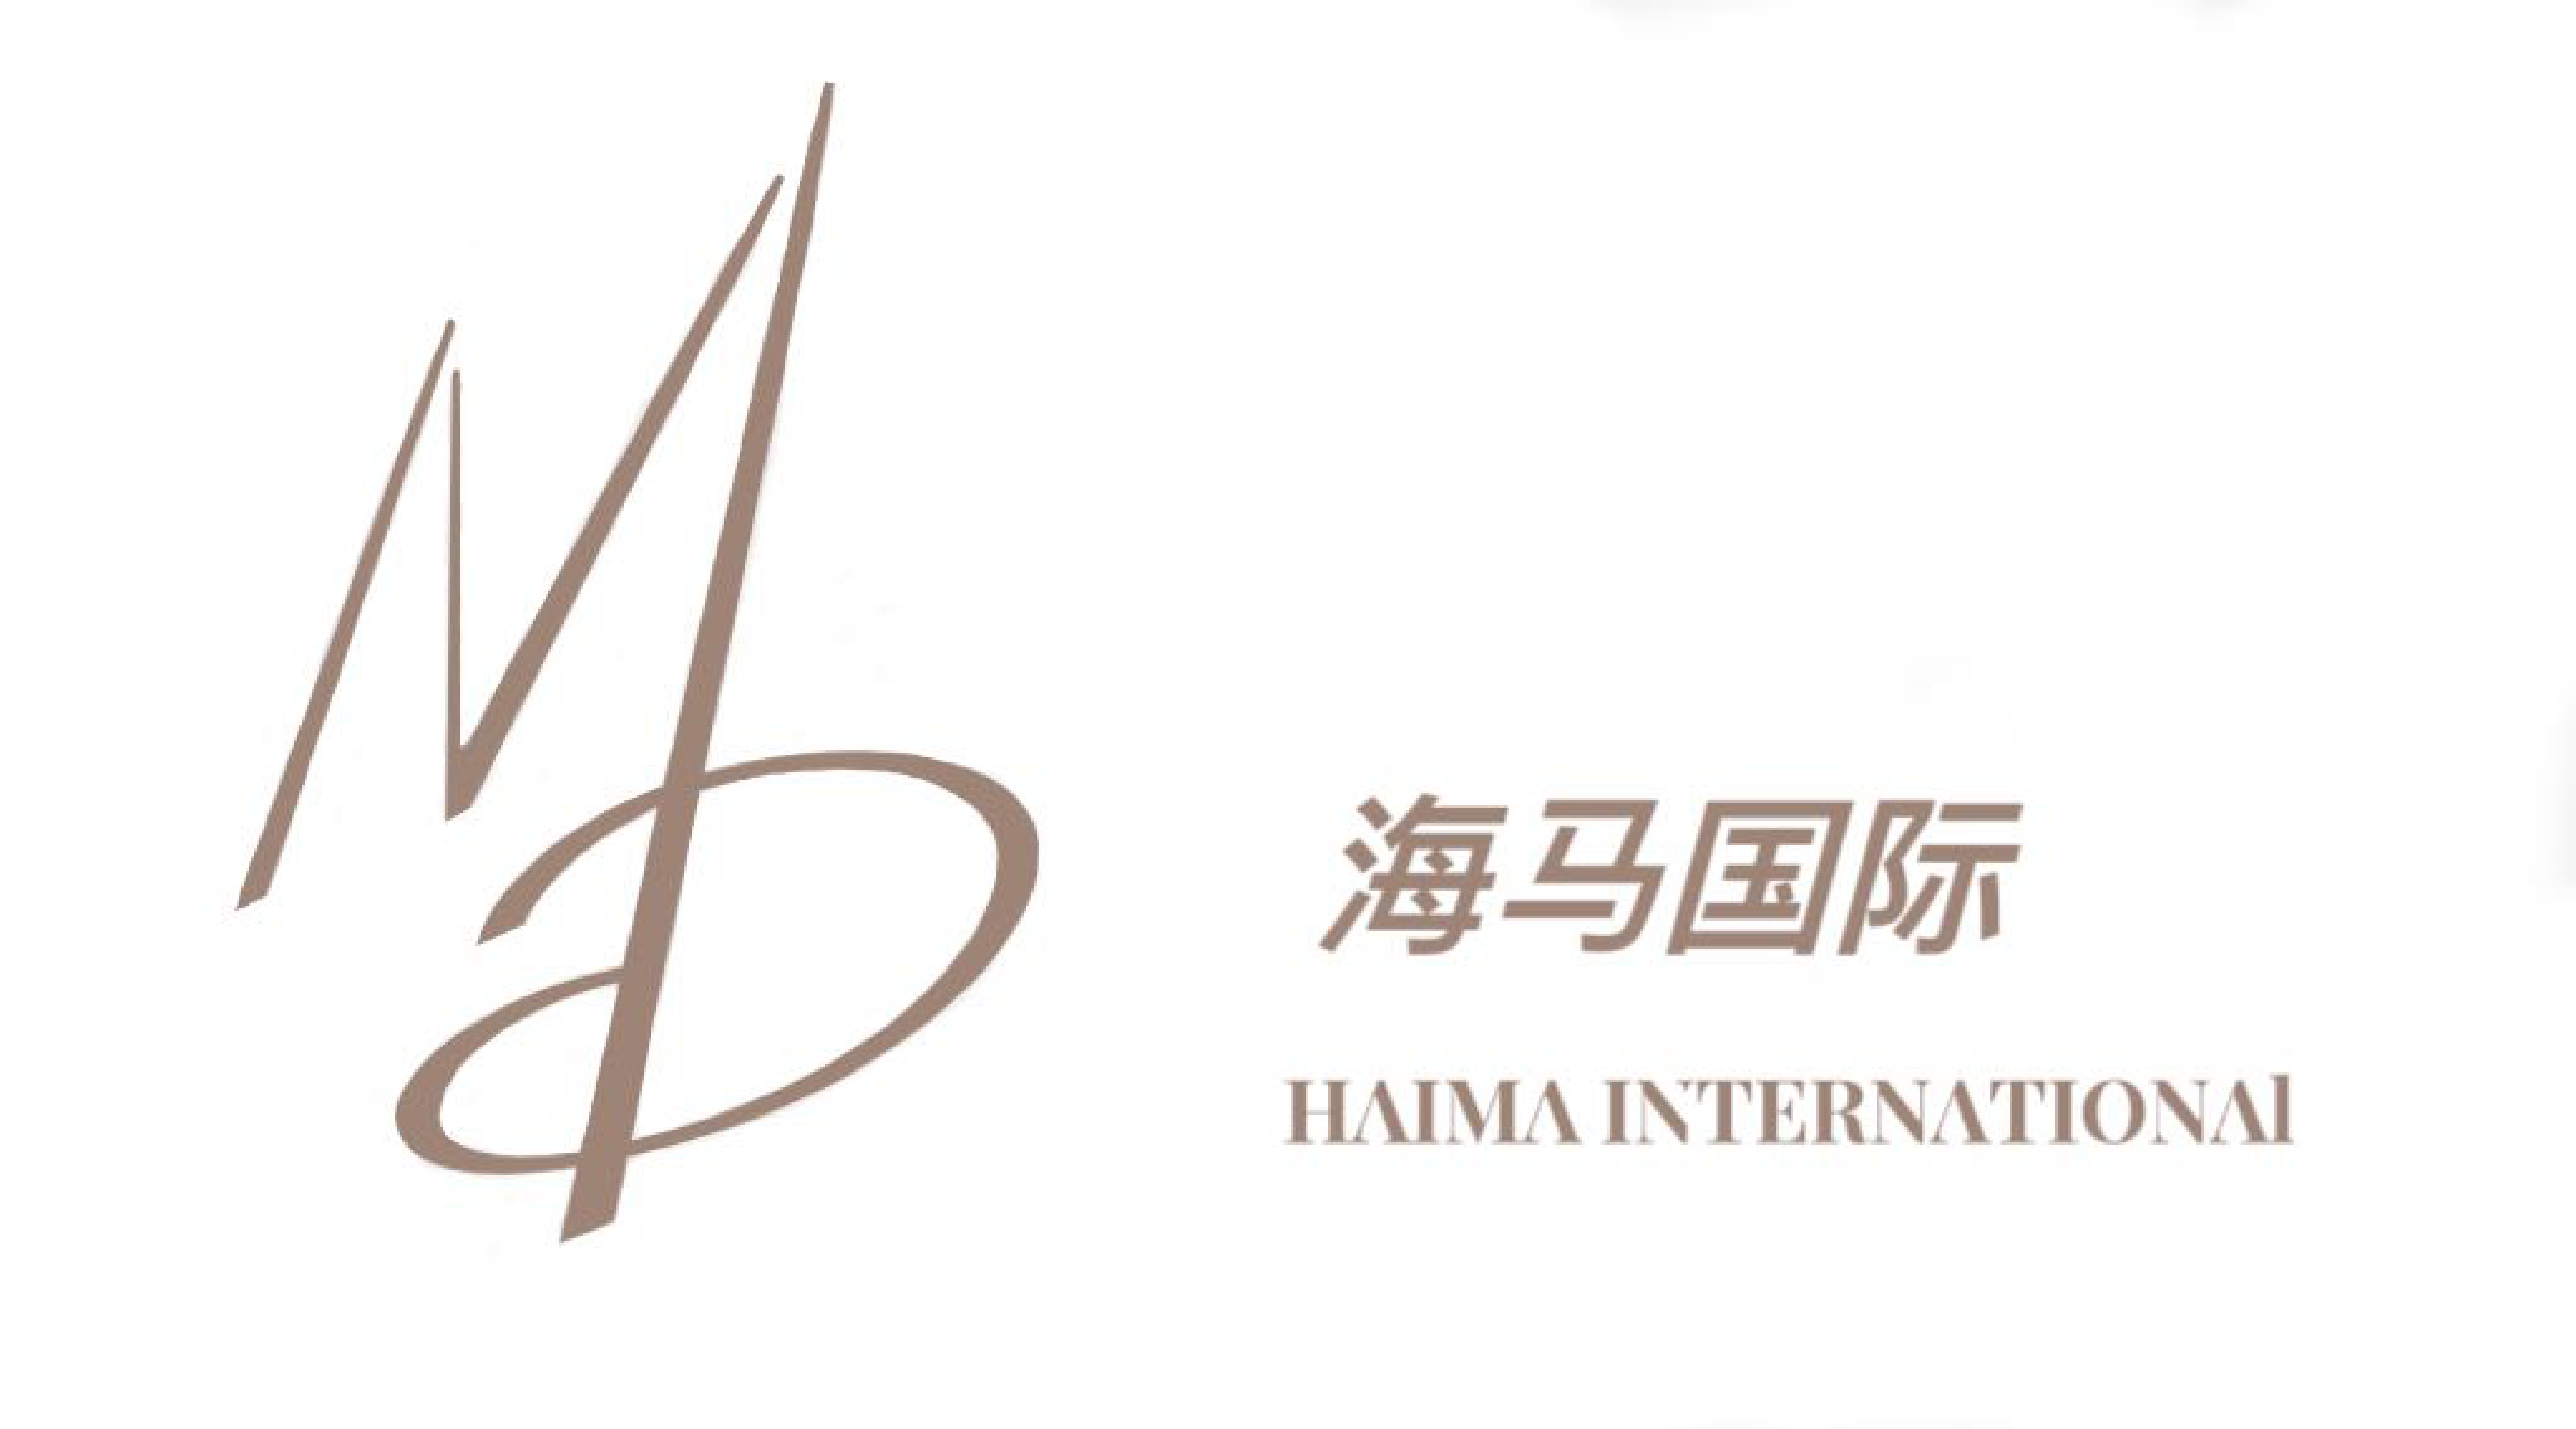 北京海马先生国际贸易有限公司